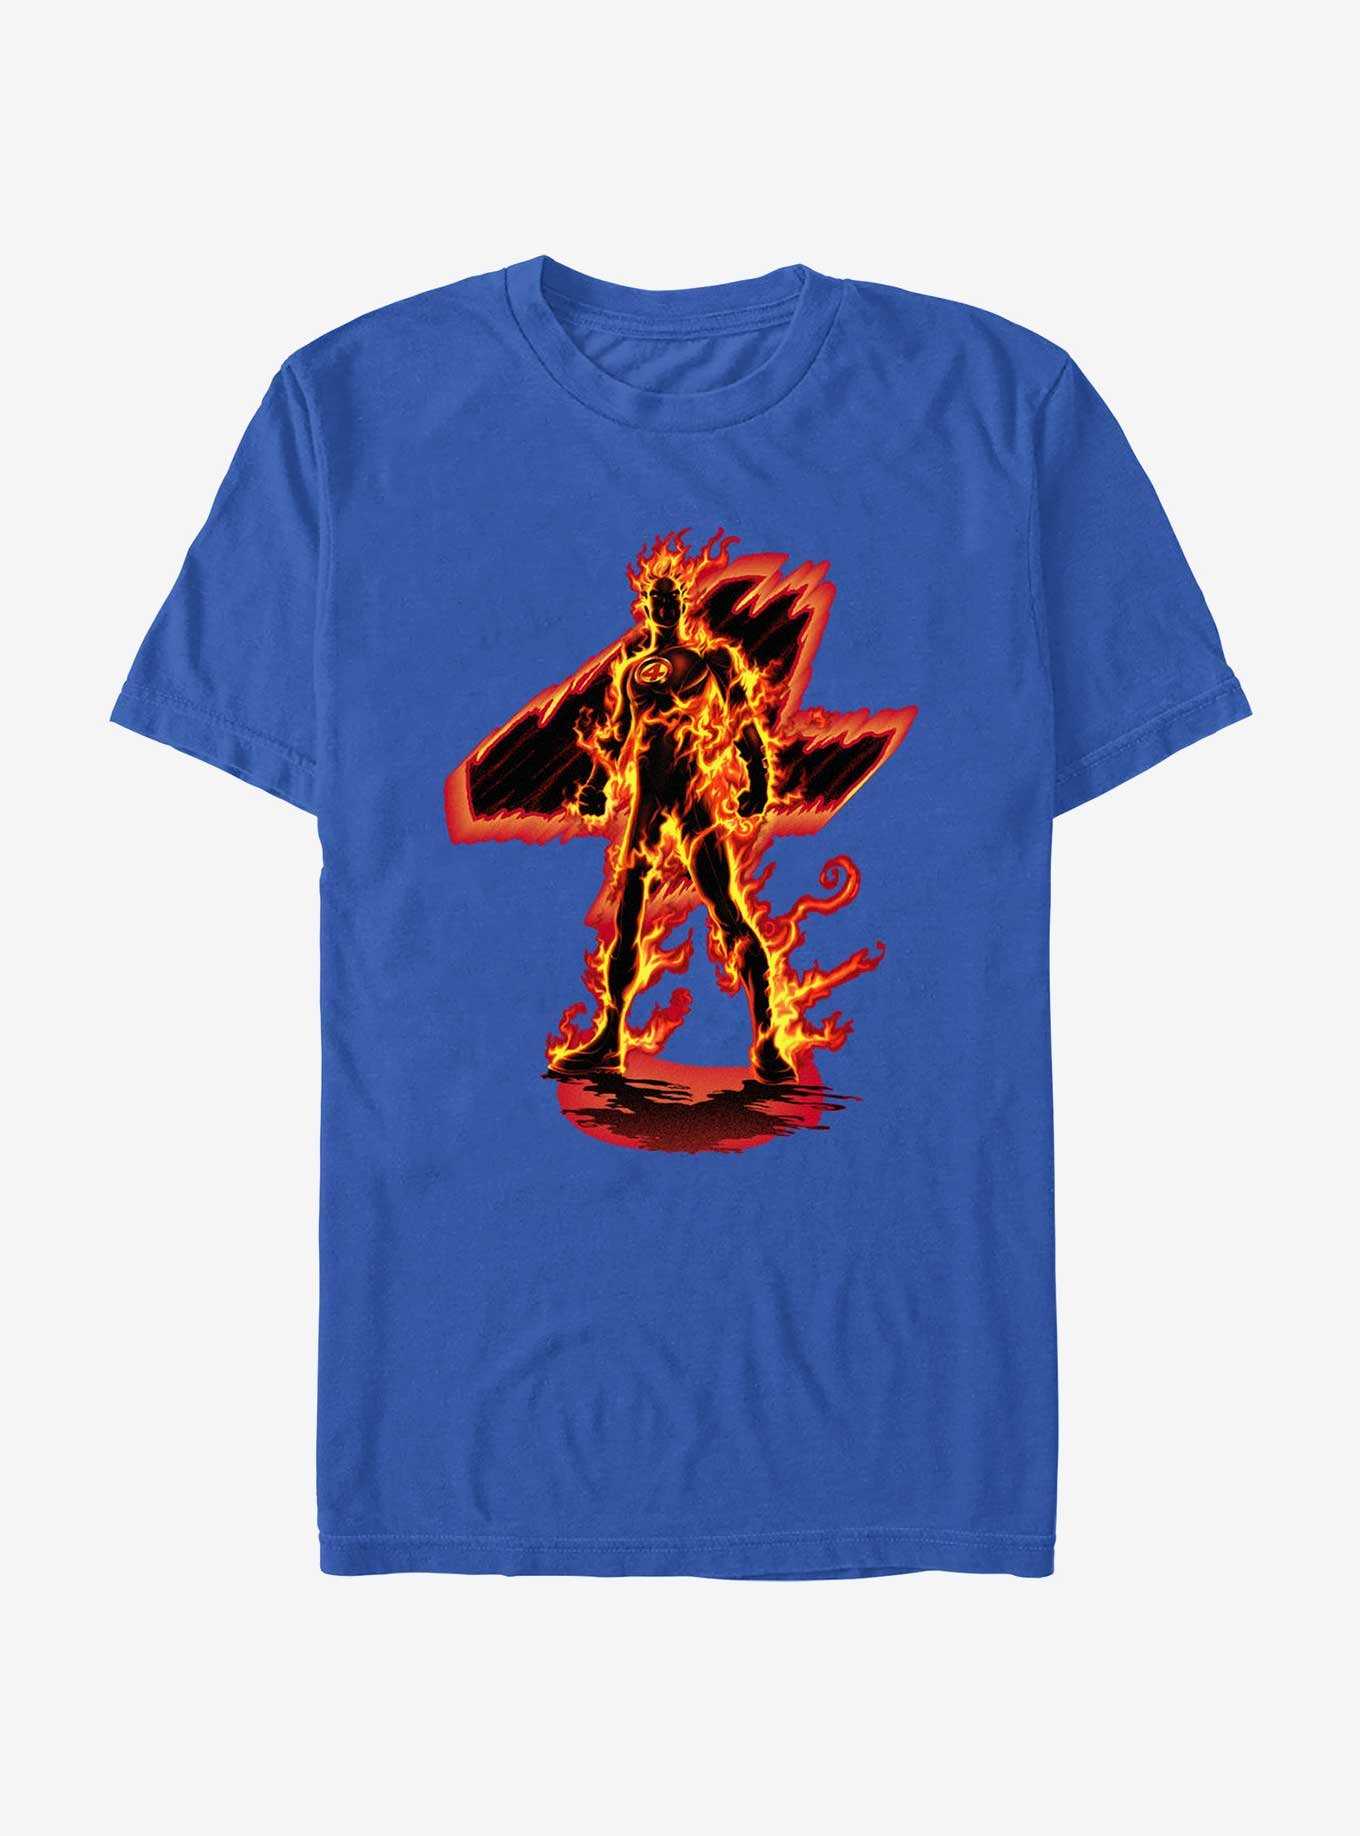 Marvel Fantastic Four 4 Stands Alone T-Shirt, , hi-res